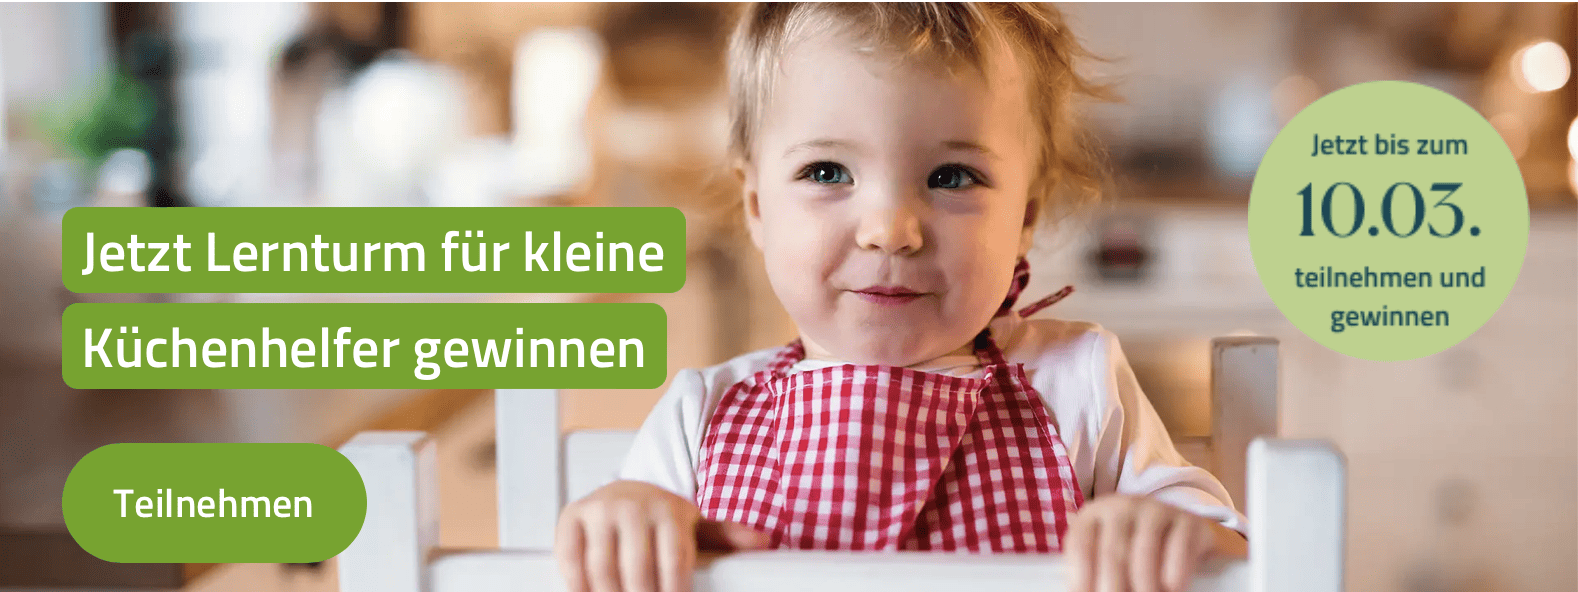 case_Barmer-Gewinnspiel Lernturm für kleine Küchenhelfer